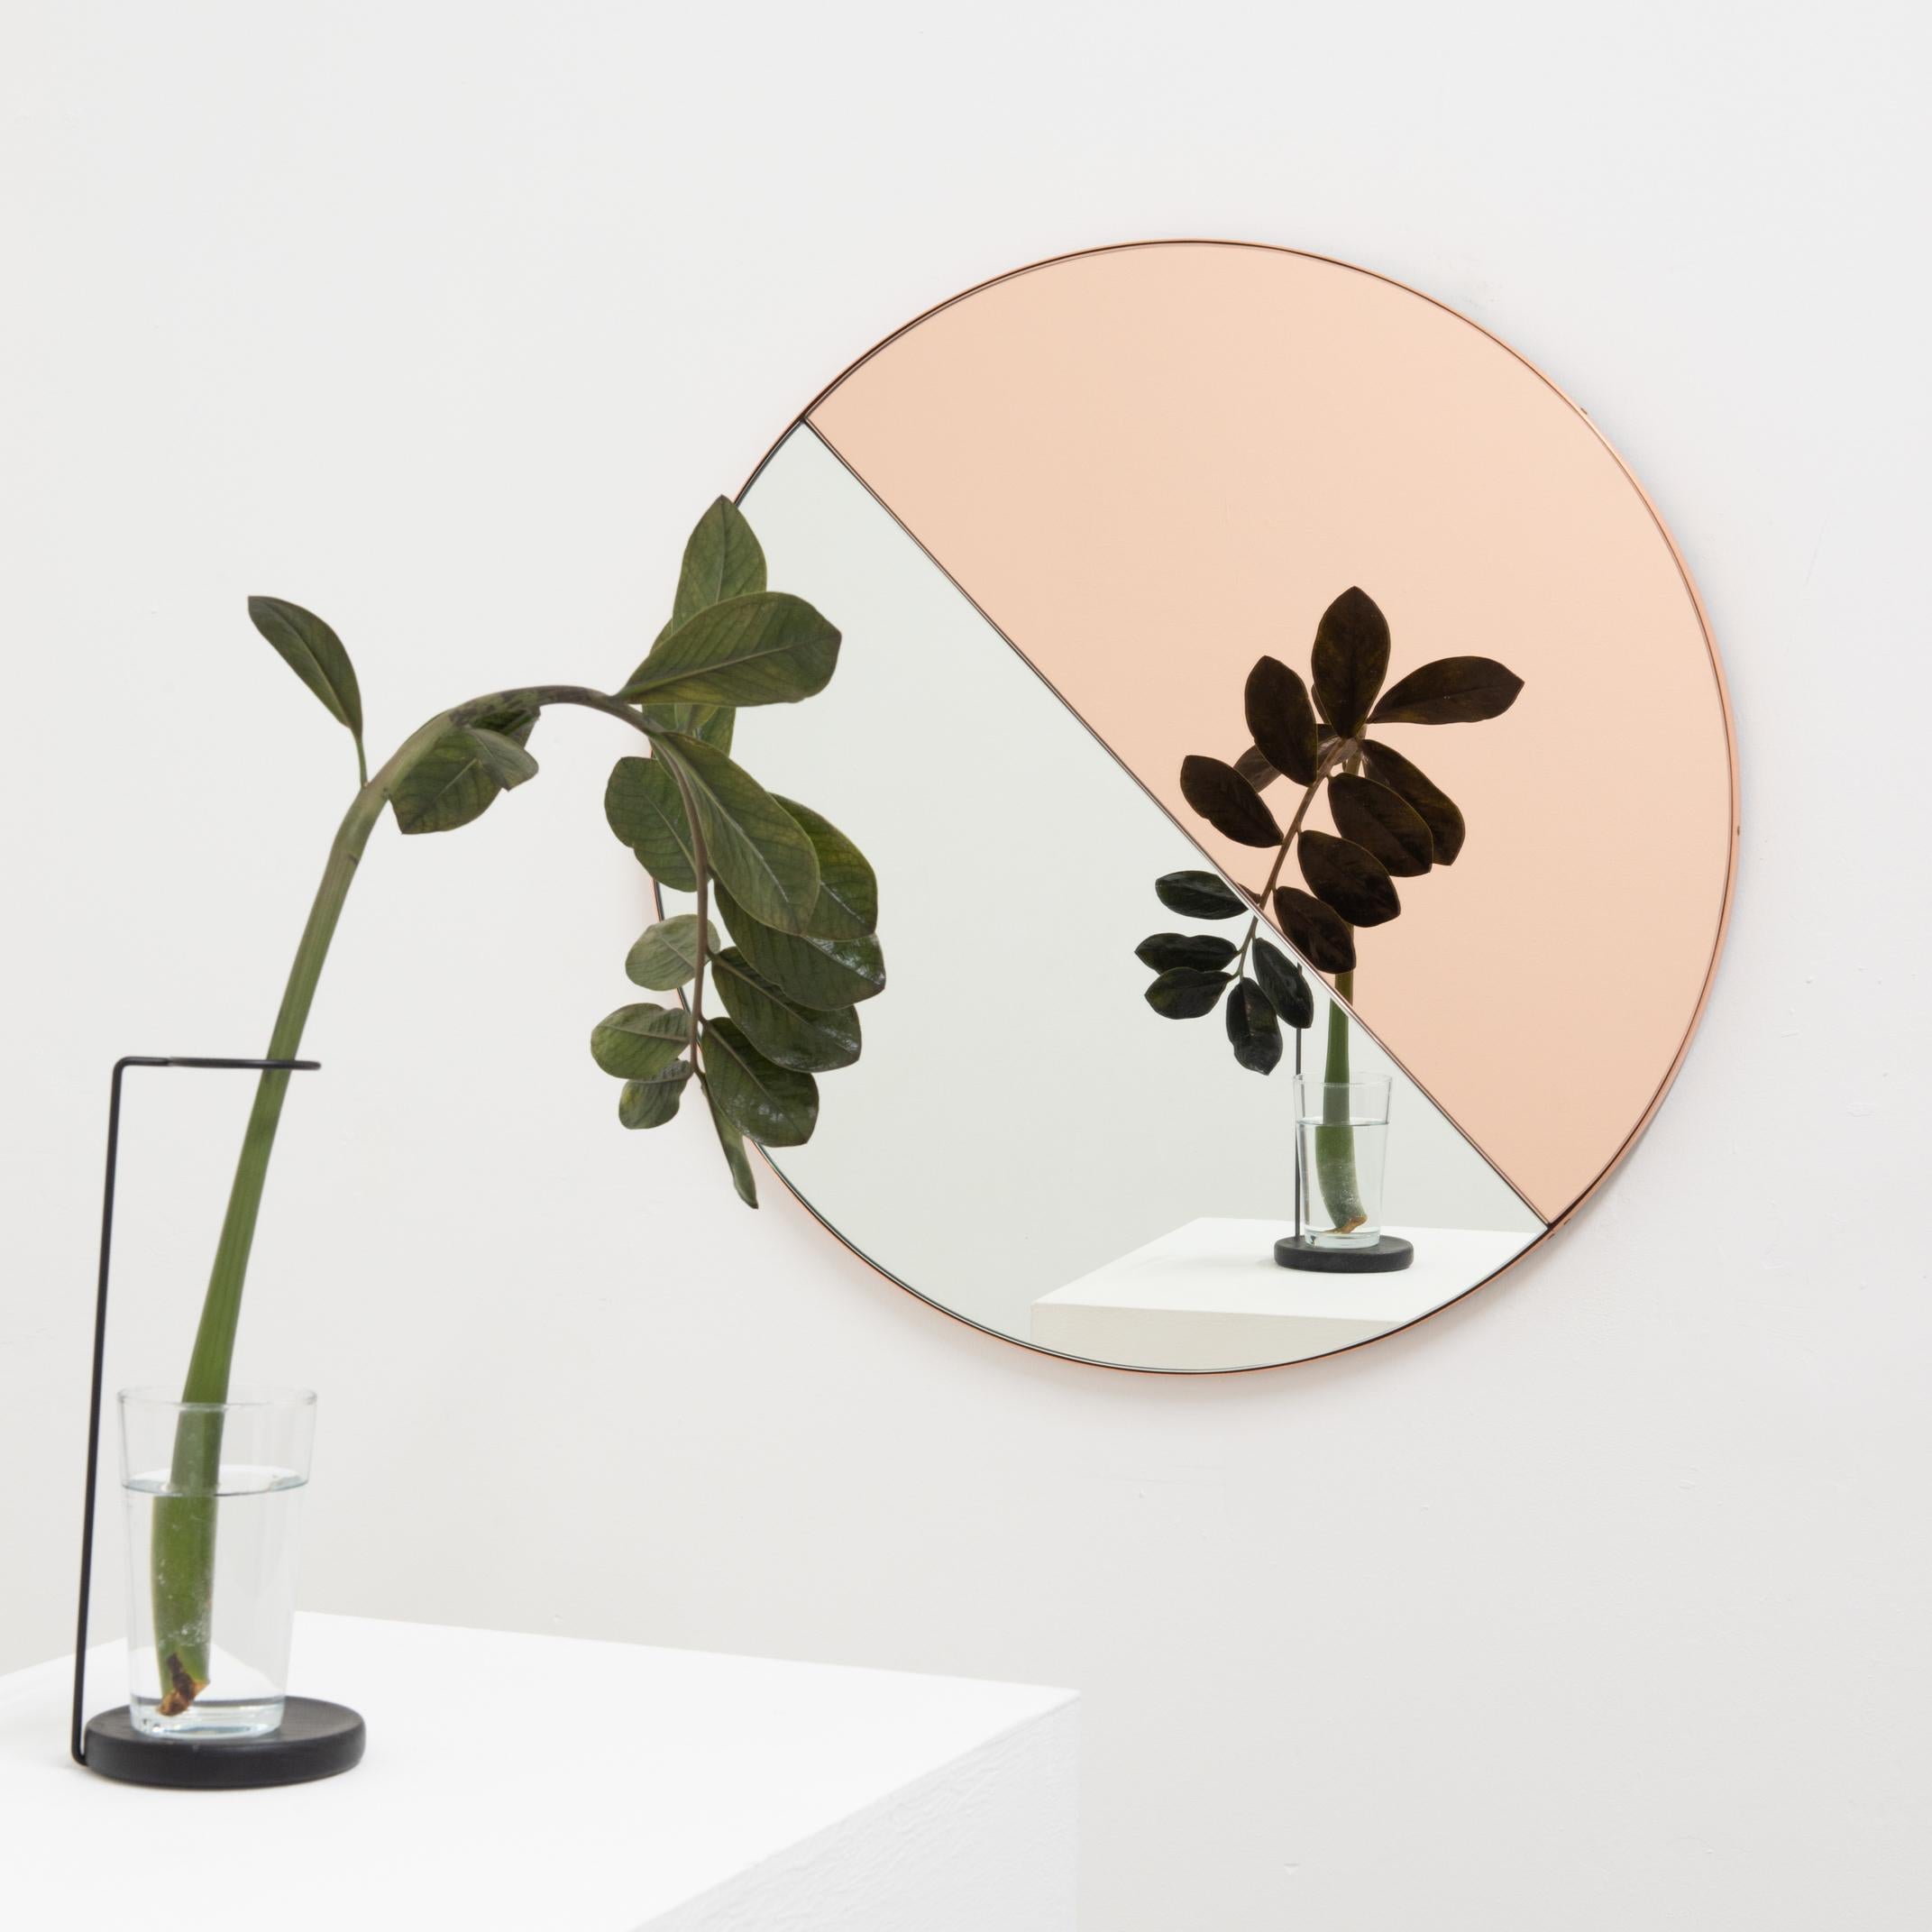 Miroir contemporain teinté mixte (argent et or rose/pêche) Orbis Dualis avec un cadre chic en cuivre. Conçu et fabriqué à la main à Londres, au Royaume-Uni.

Livré entièrement équipé d'un système d'accrochage spécialisé qui permet de suspendre le